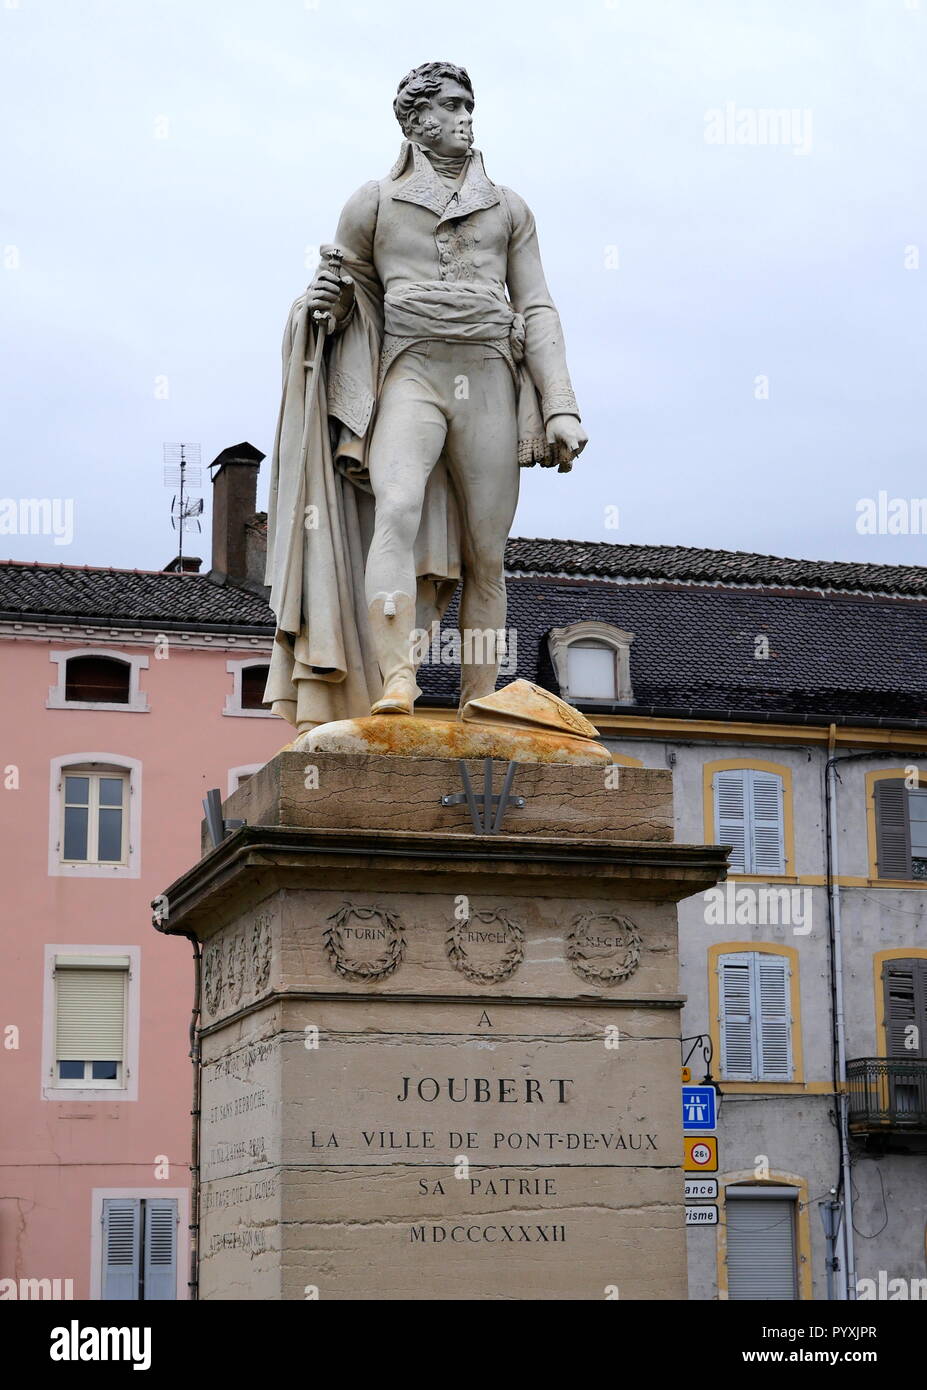 AJAXNETPHOTO. 2018. PONT DE VAUX, Francia. - Il giovane generale - Statua del soldato e generale BARTHELEMY CATHERINE JOUBERT (1769-1799) nel centro della città. JOUBERT è nato qui, morì nella battaglia di Novi, Italia. Foto:JONATHAN EASTLAND/AJAX REF:GX8 180910 852 Foto Stock